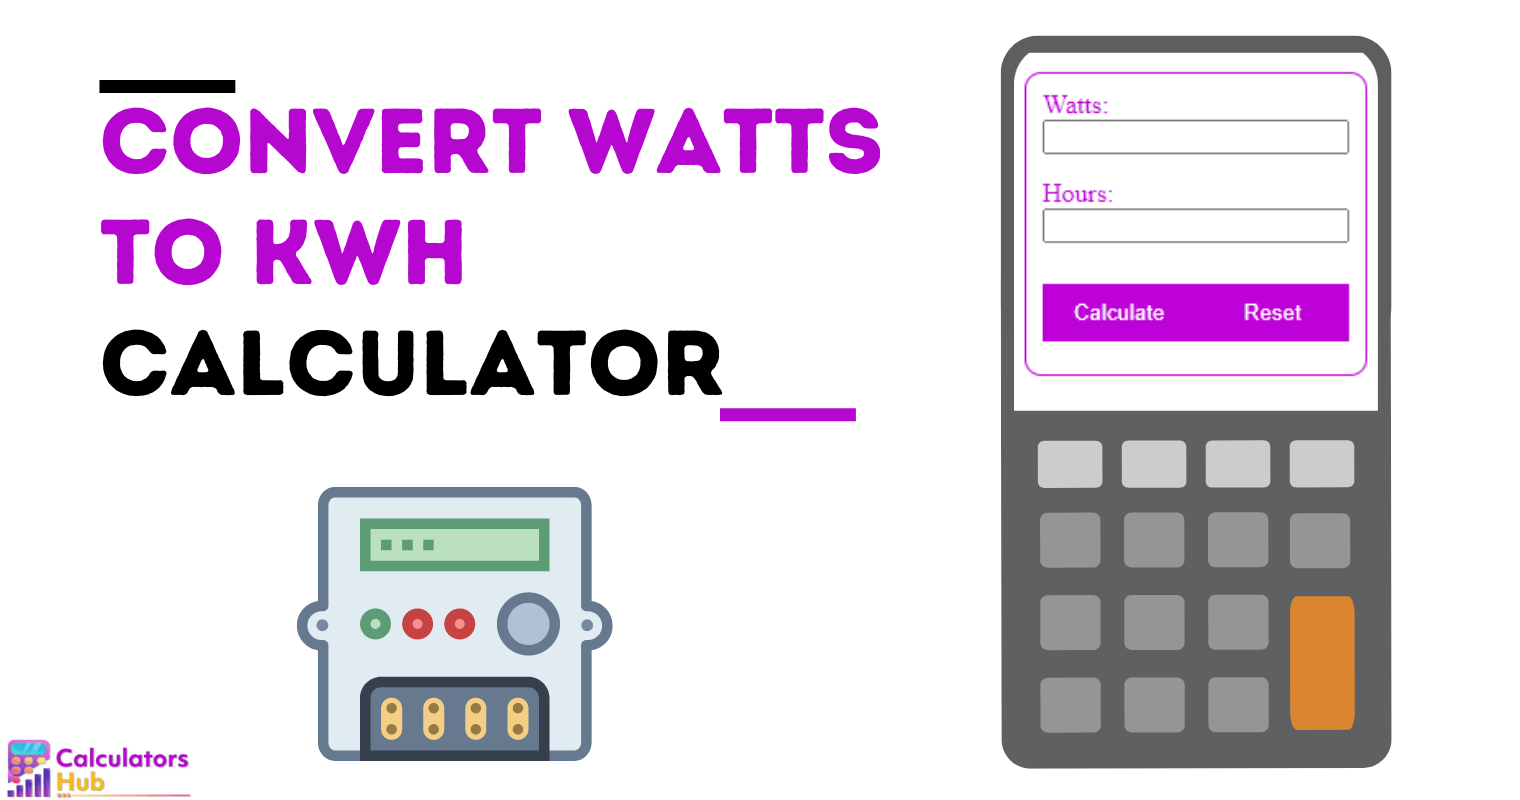 Convert Watts to kWh Calculator